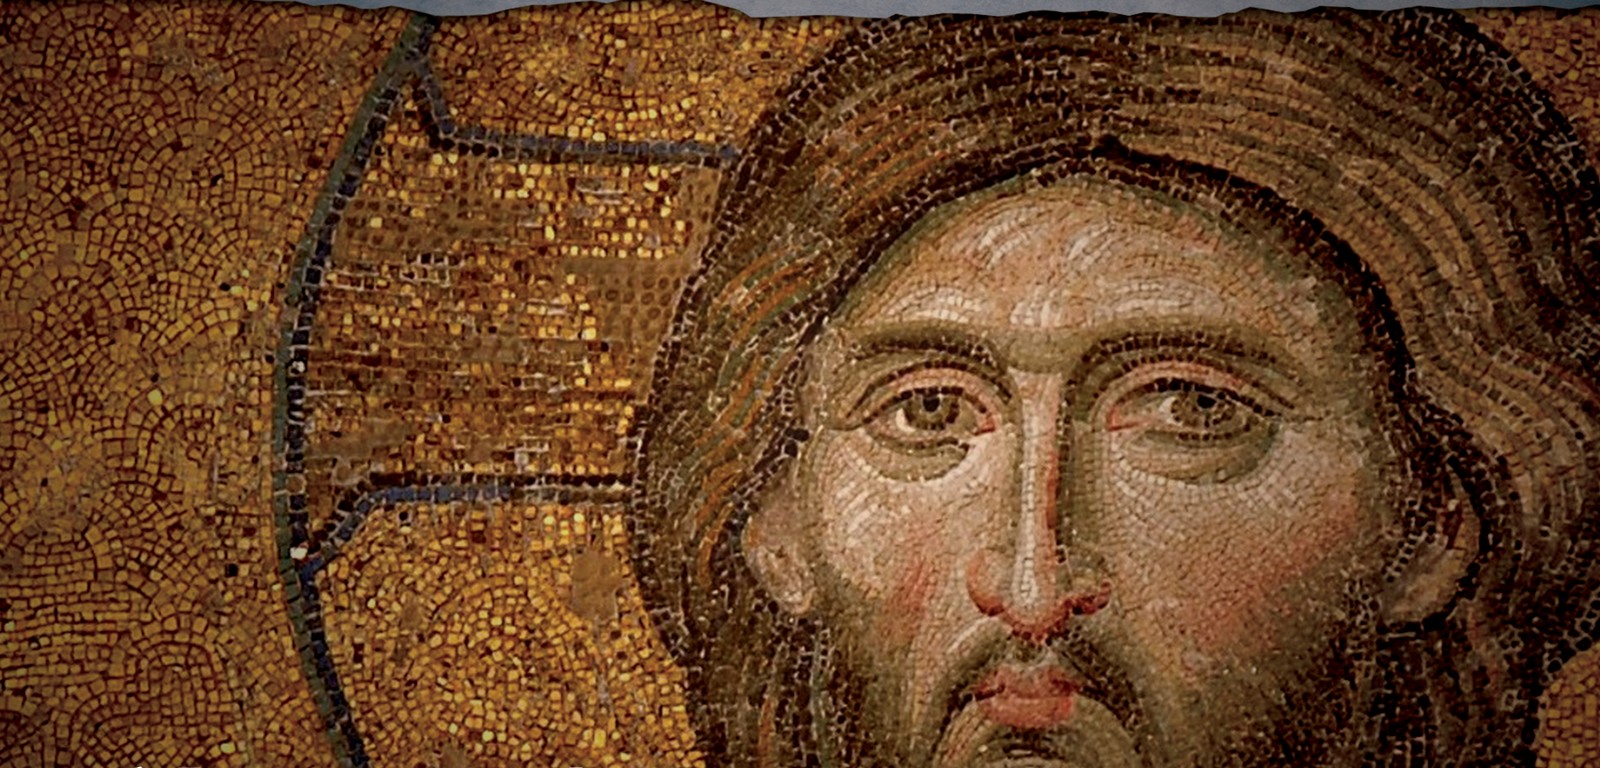 El descubrimiento del Mosaico Isa probablemente corrobora la Veracidad de la SÁBANA SANTA de Turín…